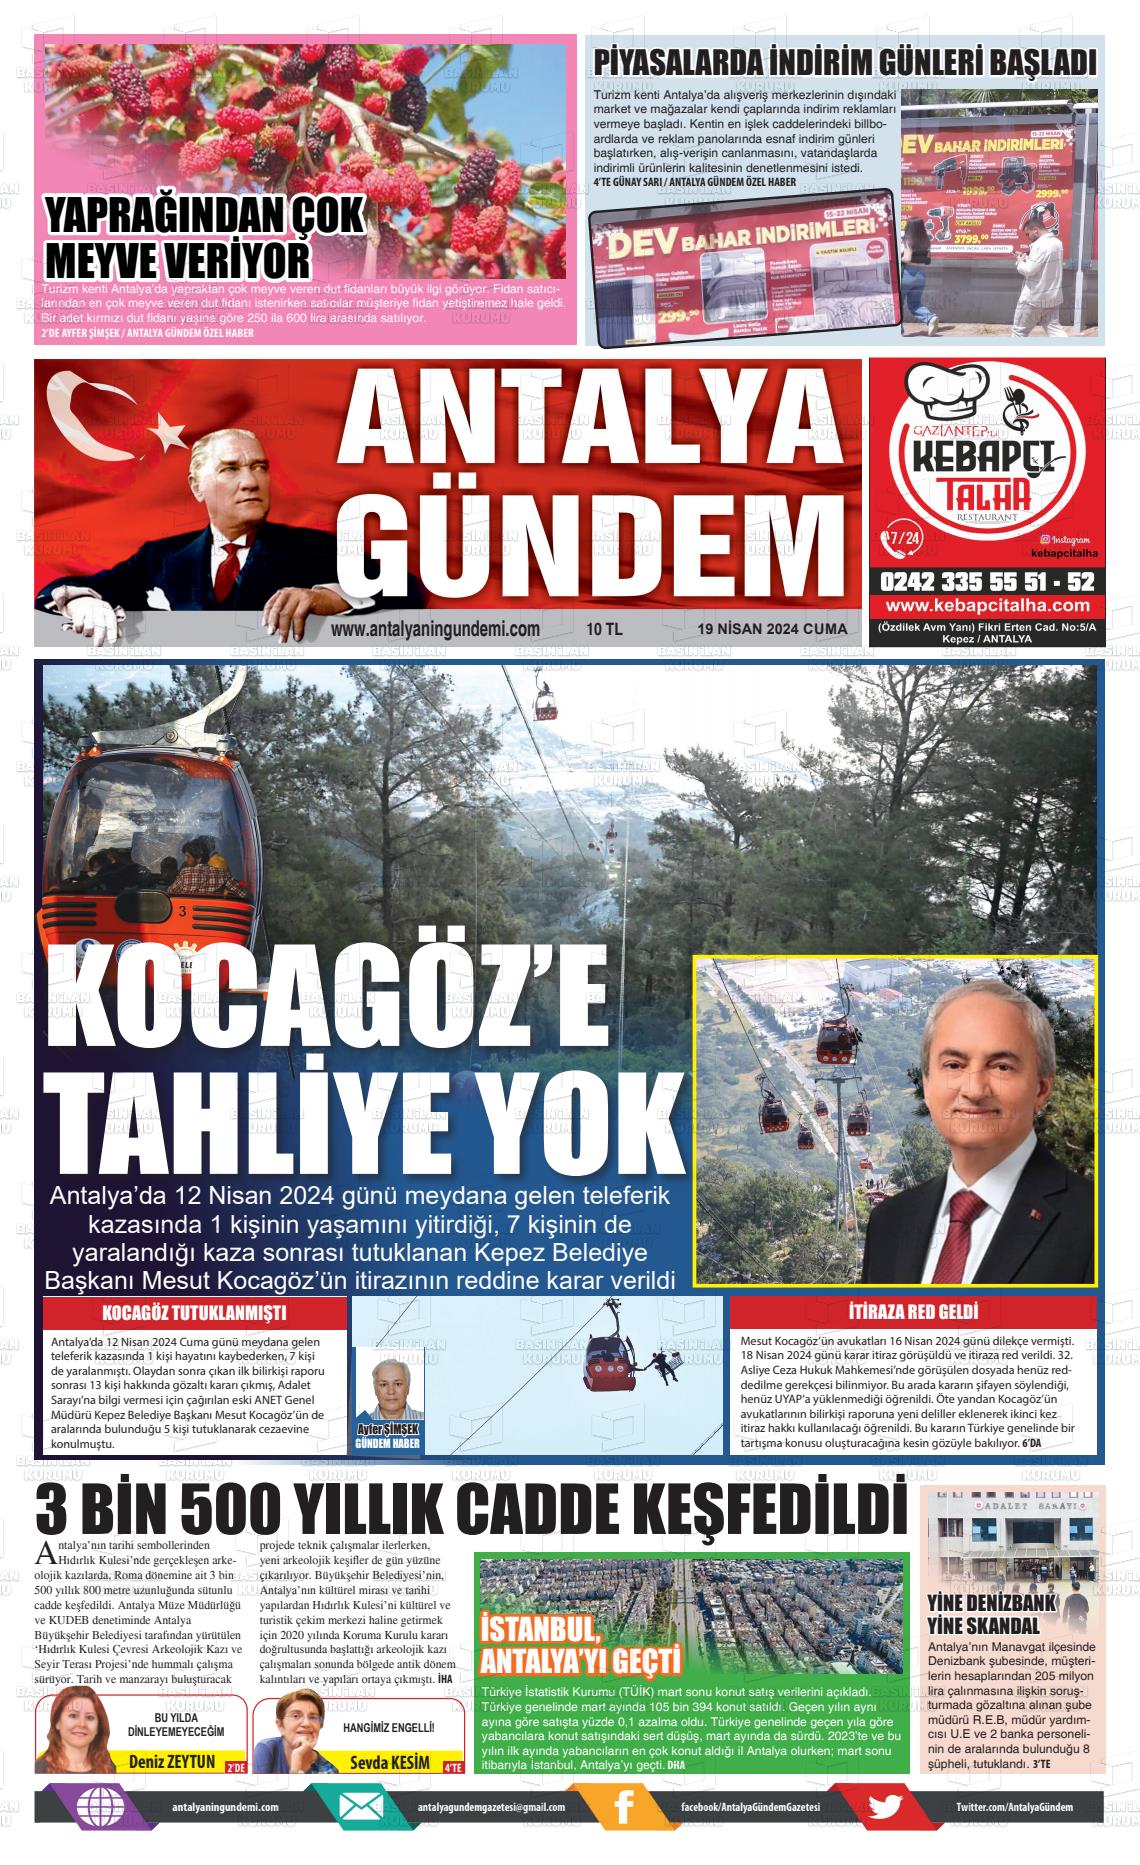 19 Nisan 2024 Antalya'nın Gündemi Gazete Manşeti